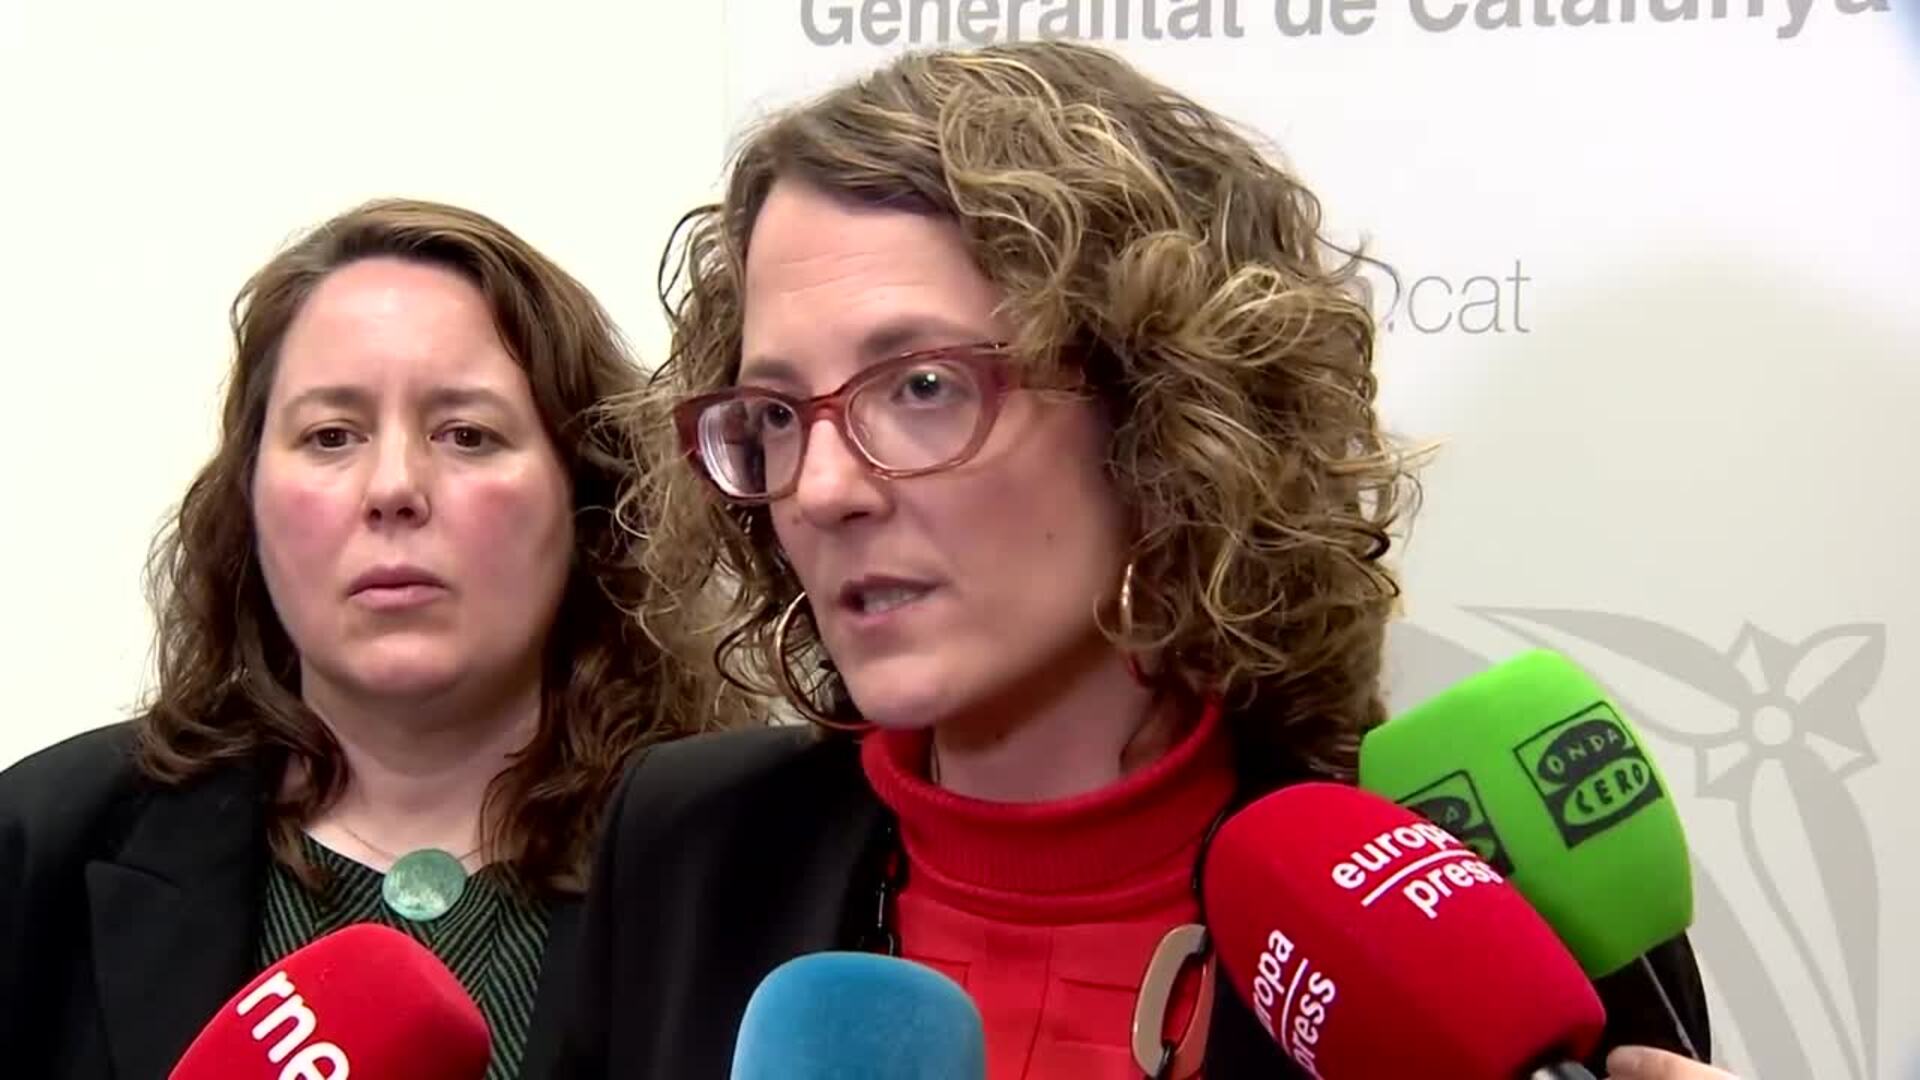 Verge afirma que la situación de los feminicidios en Cataluña 'no tiene explicación'